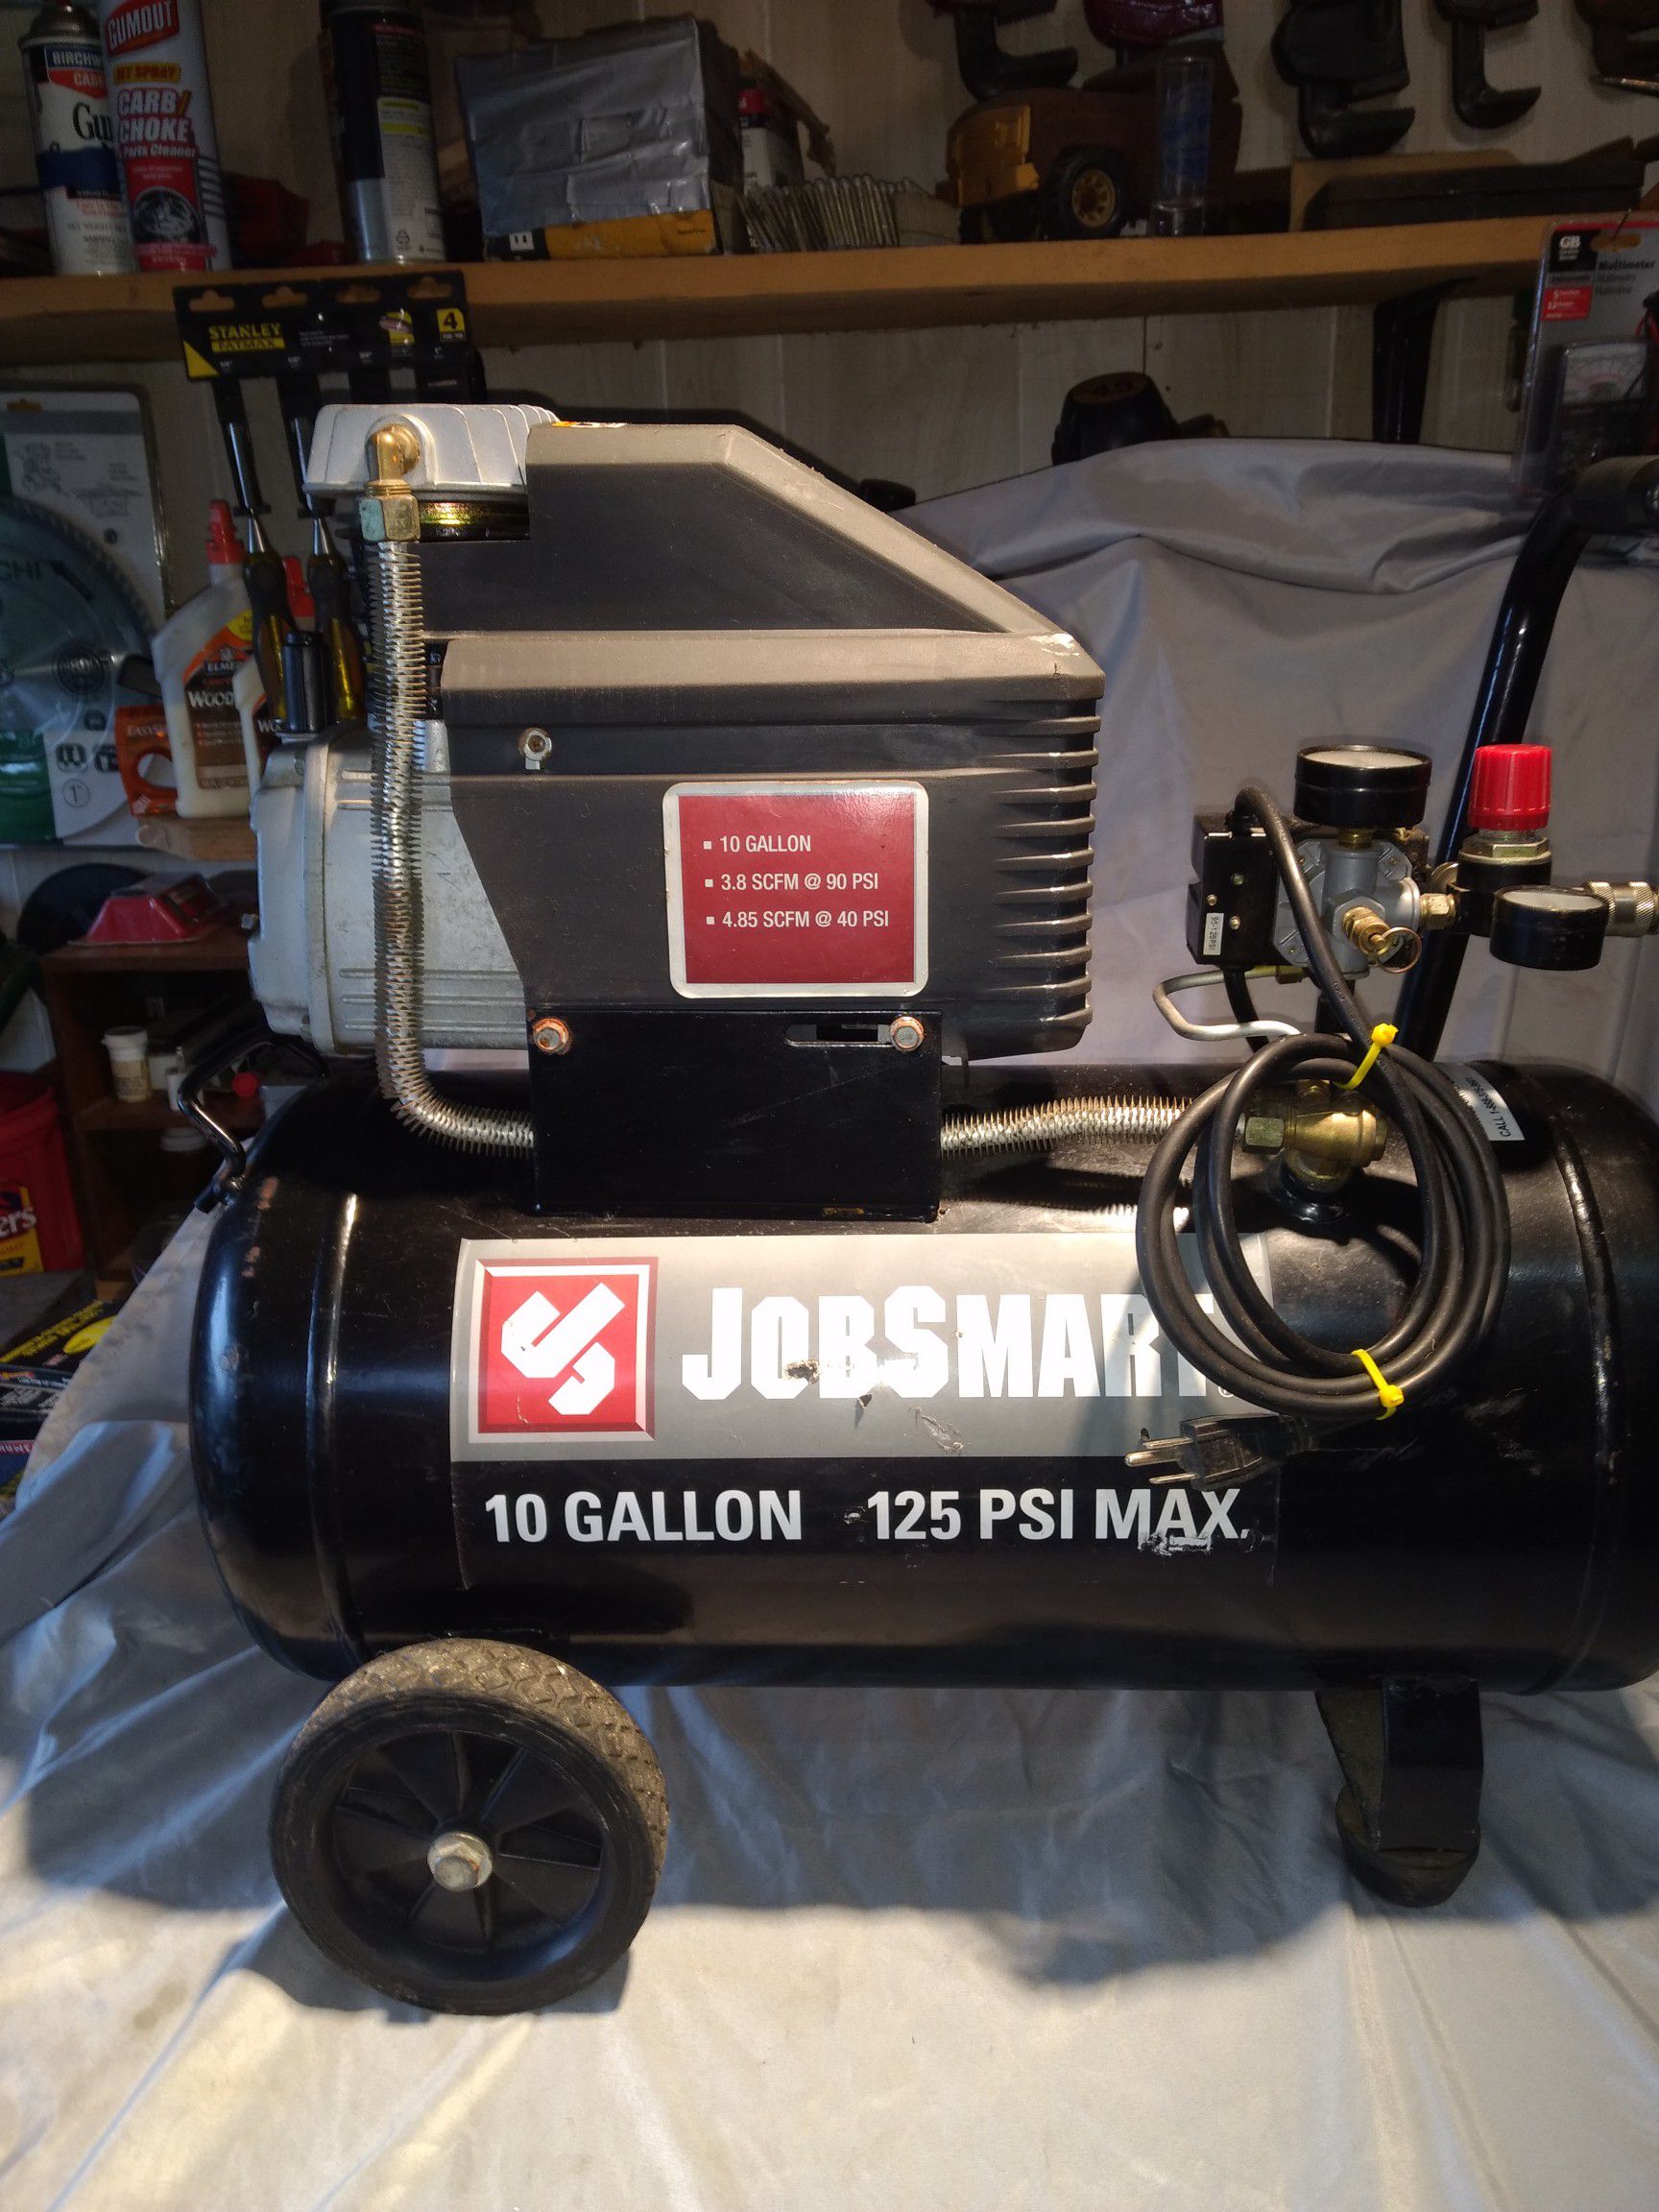 Job smart 10 gal air compressor